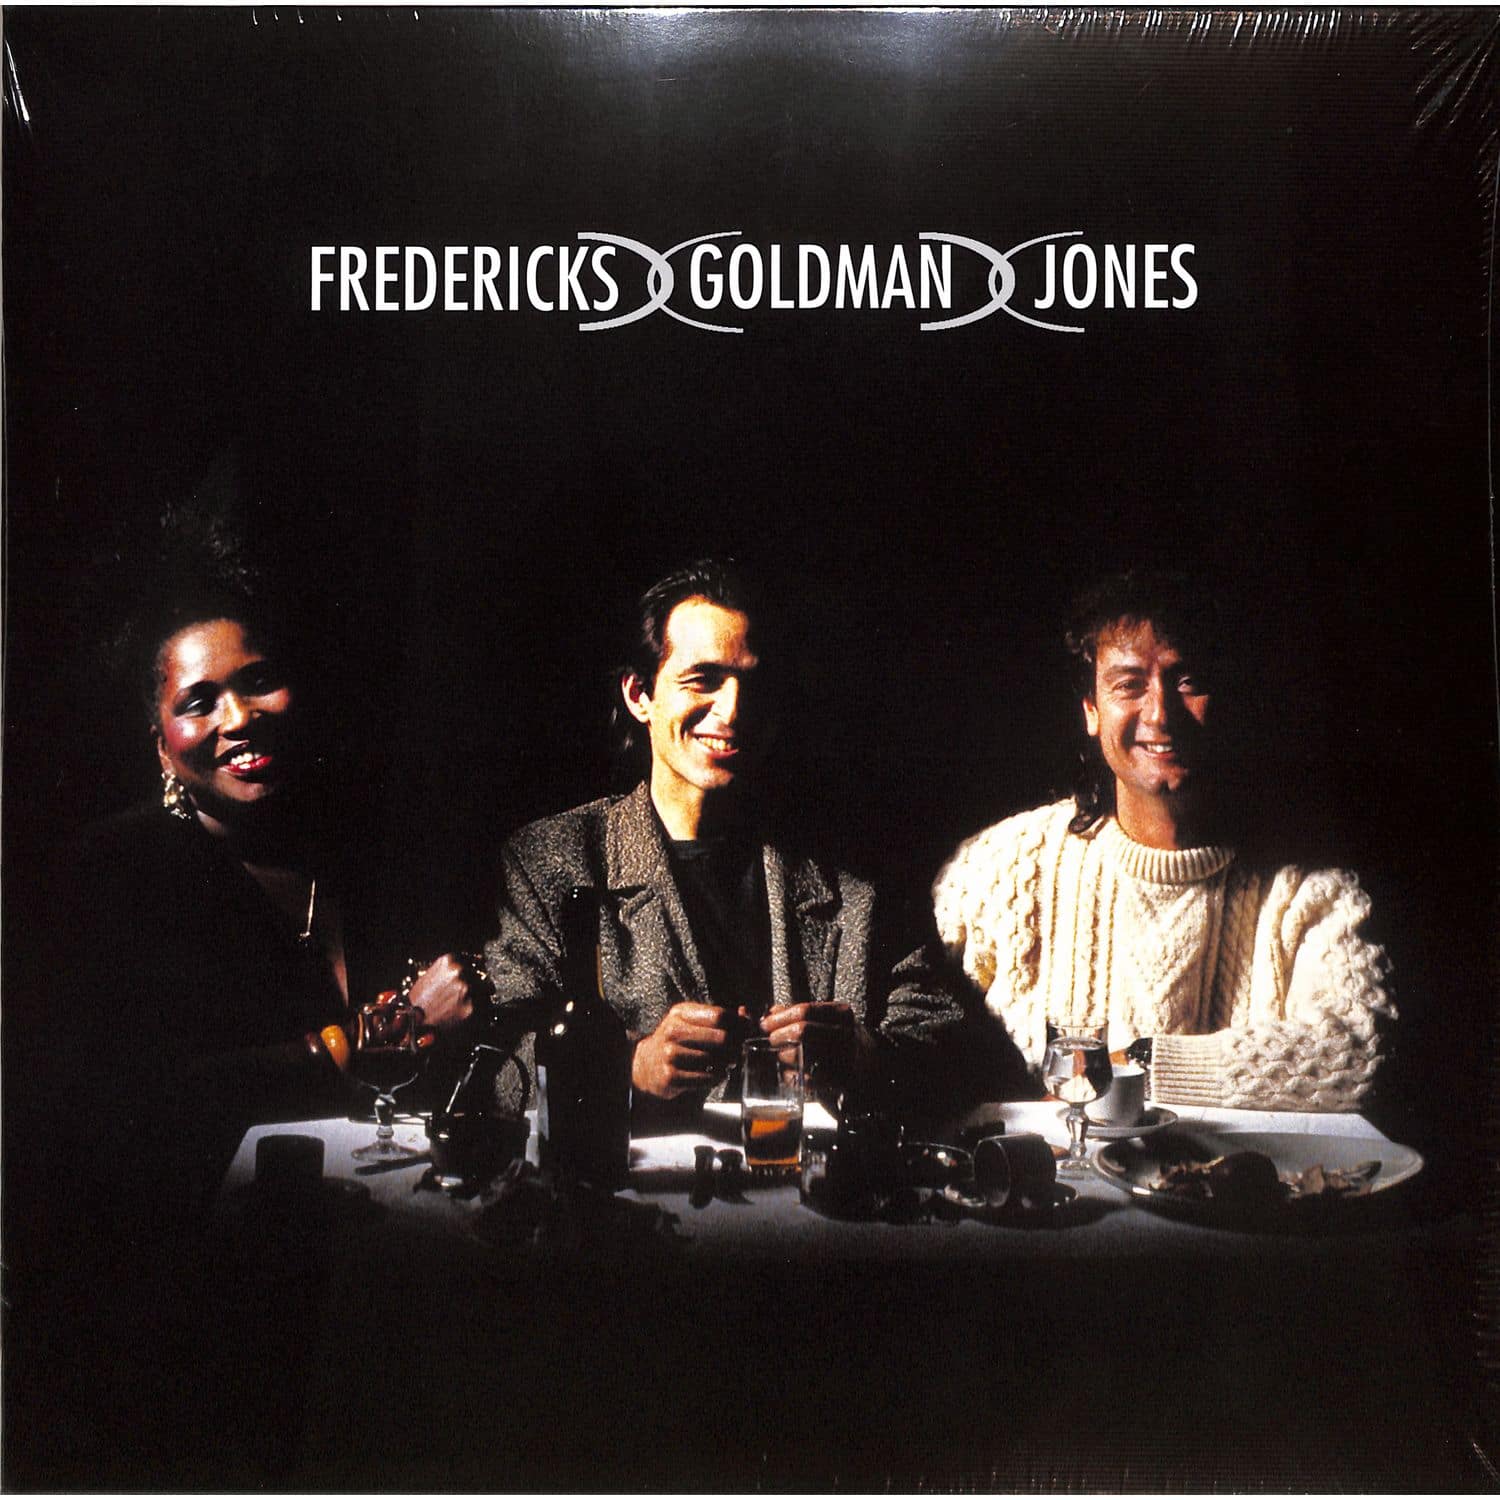 Fredericks Goldman Jones - FREDERICKS GOLDMAN JONES 